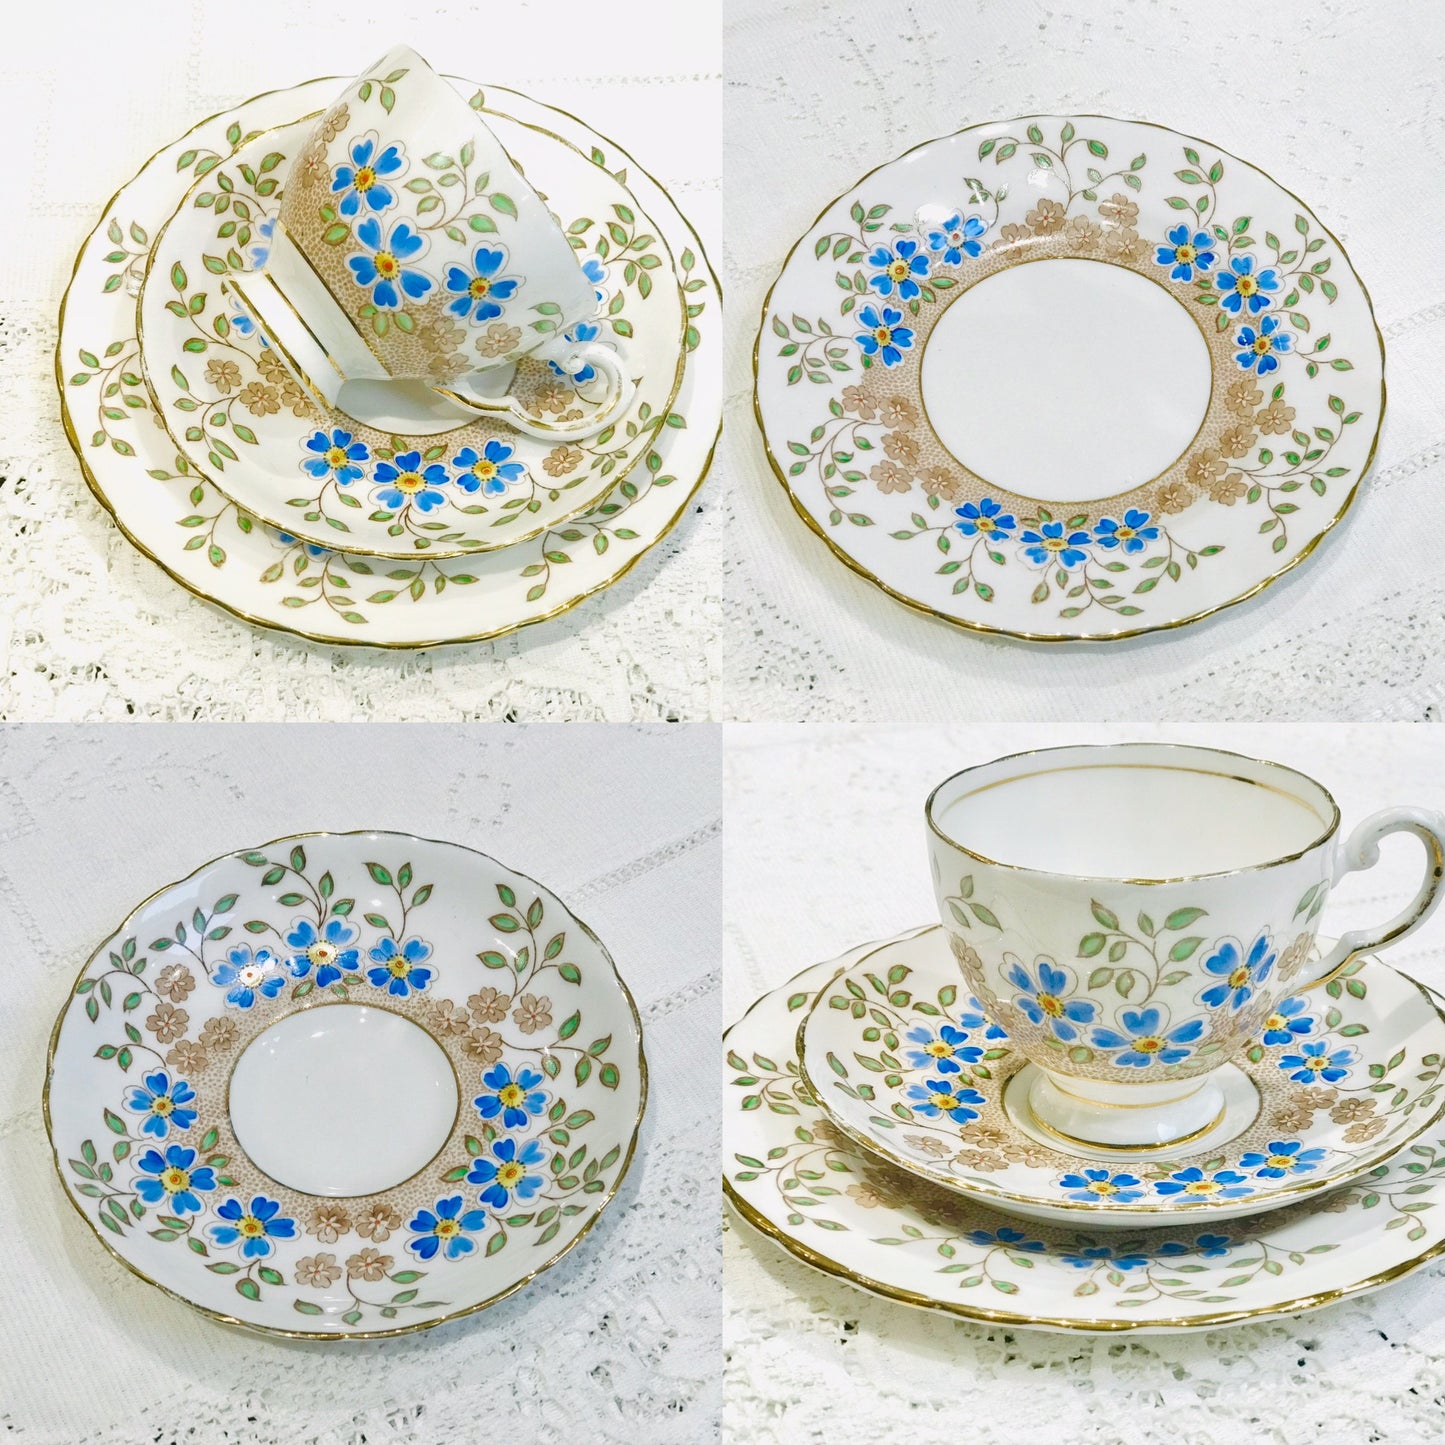 Bonitas tazas de té y platillos toscanos florales en azul y blanco